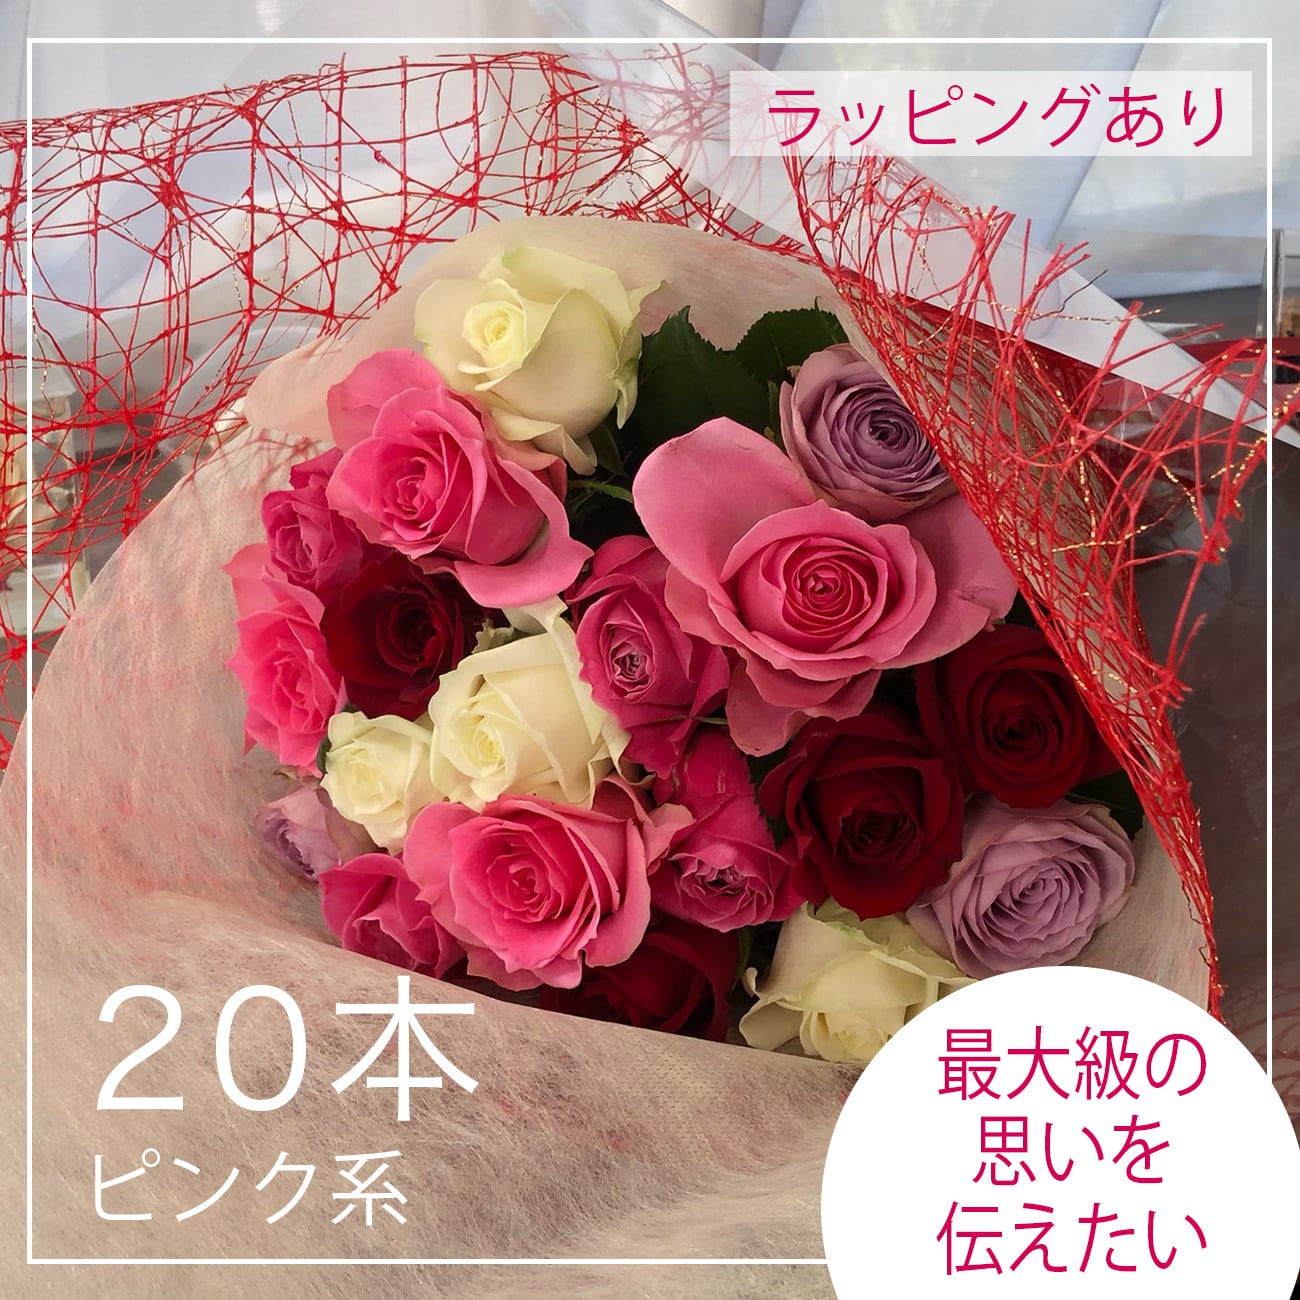 薔薇の花束セット贈答用20本ピンク系